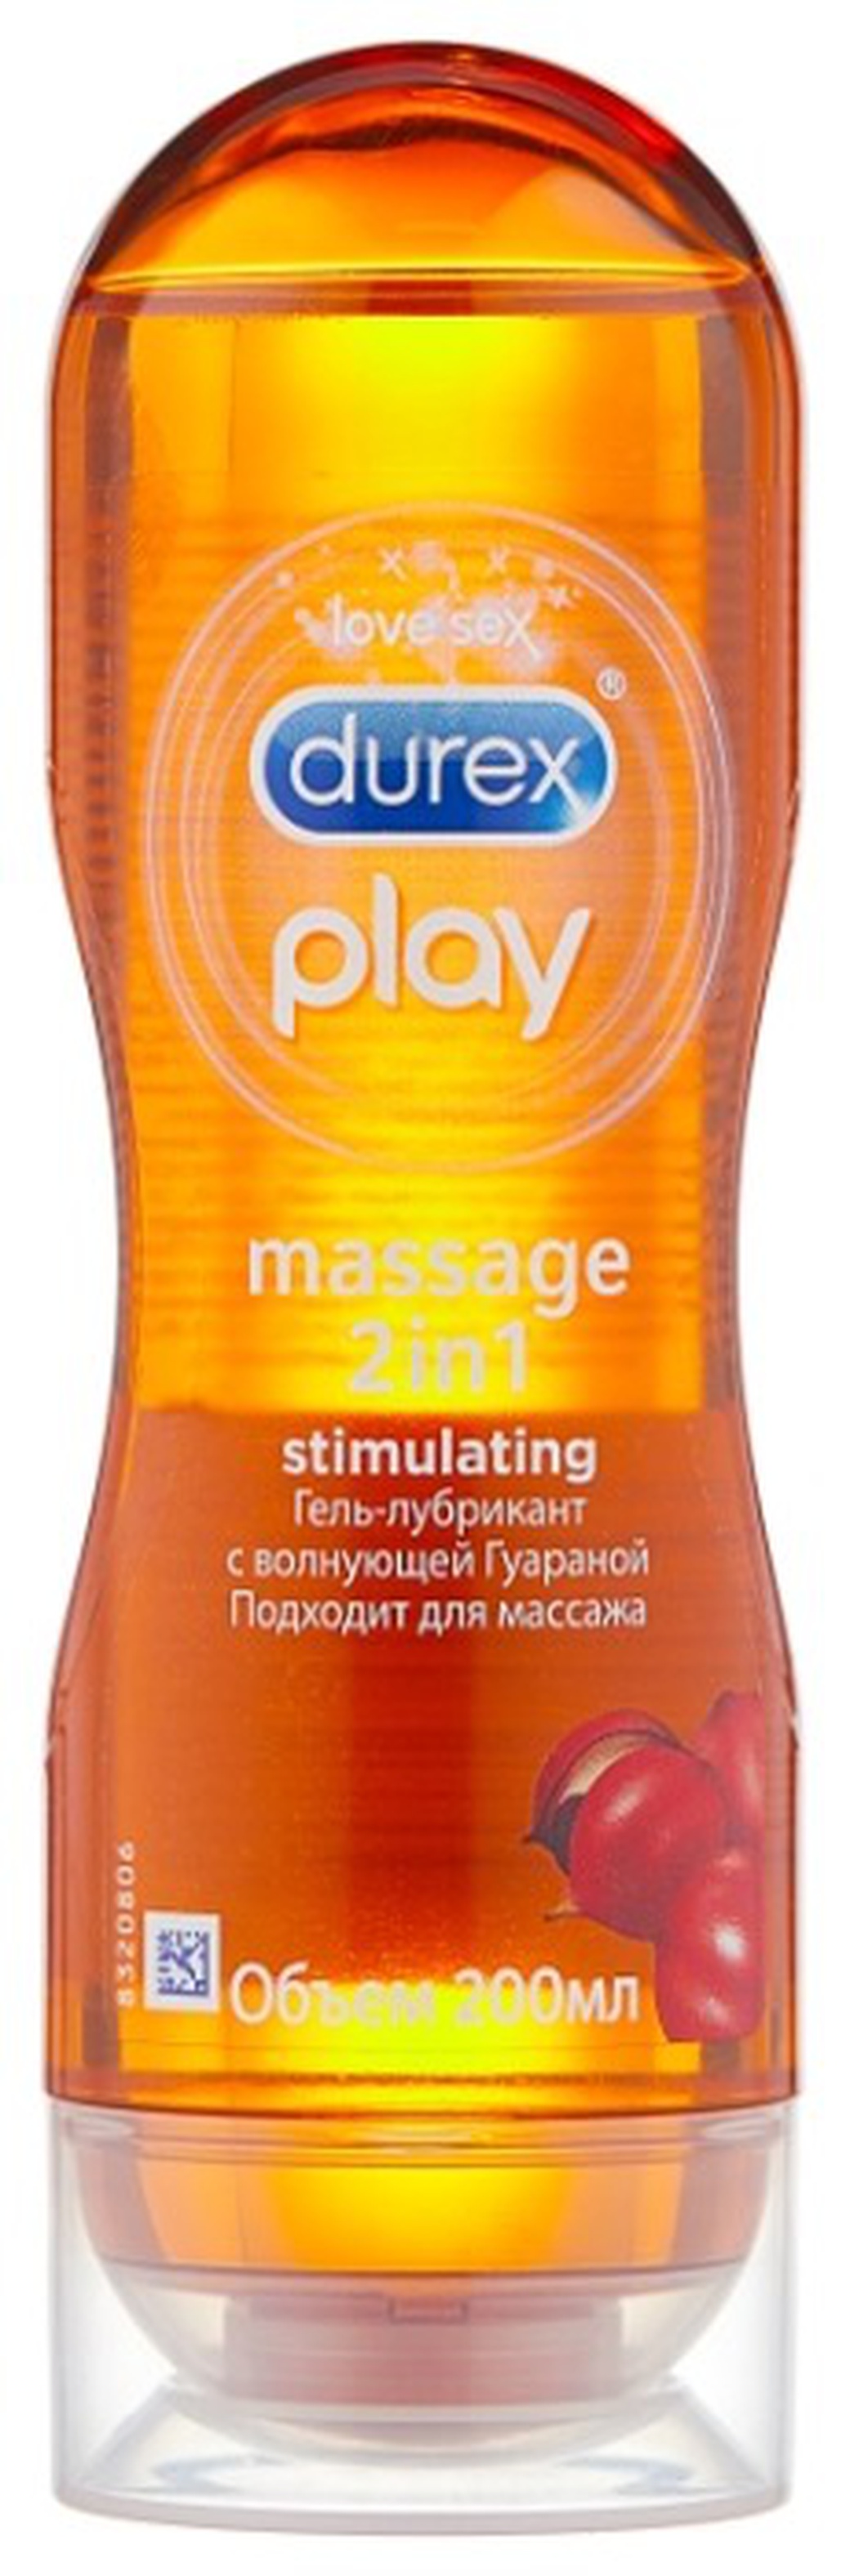 Гель-смазка Дюрекс Play Massage 2в1 с гуараной 200мл фото